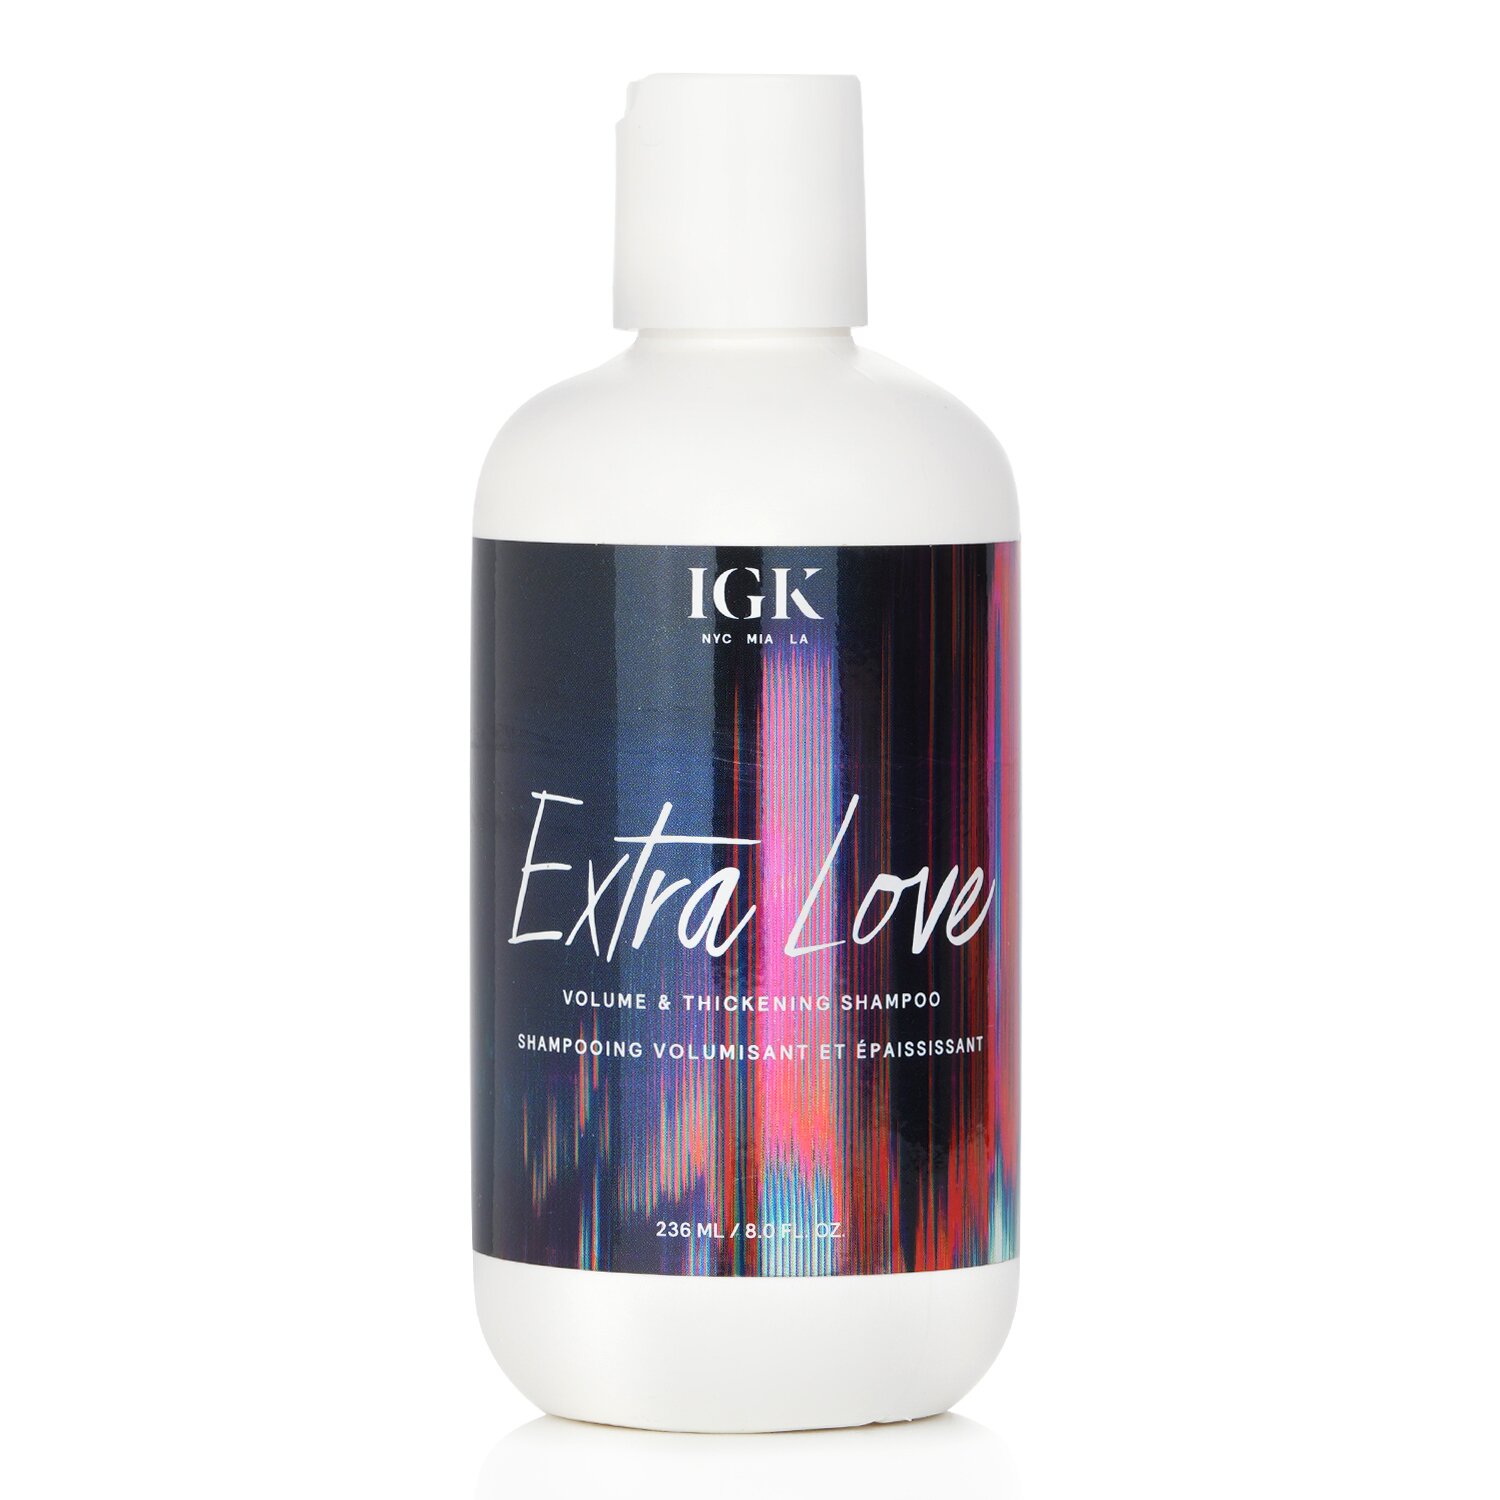 IGK Extra Love Volume & Thickening Shampoo 236ml/8oz